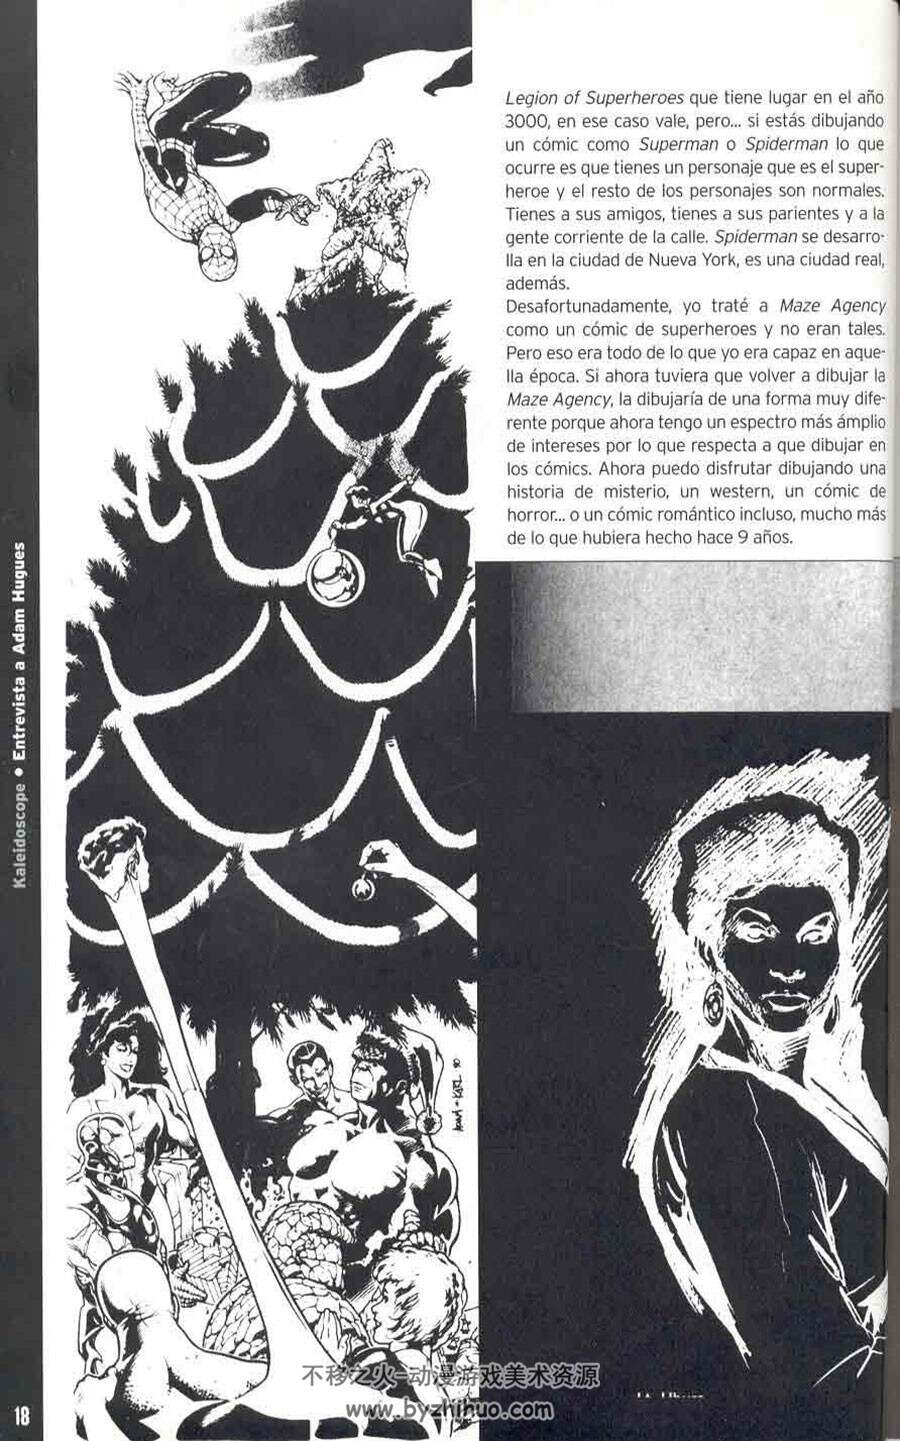 美国漫画家 亚当·休斯的速写本 画师黑白手稿原画线稿草稿作品欣赏画集